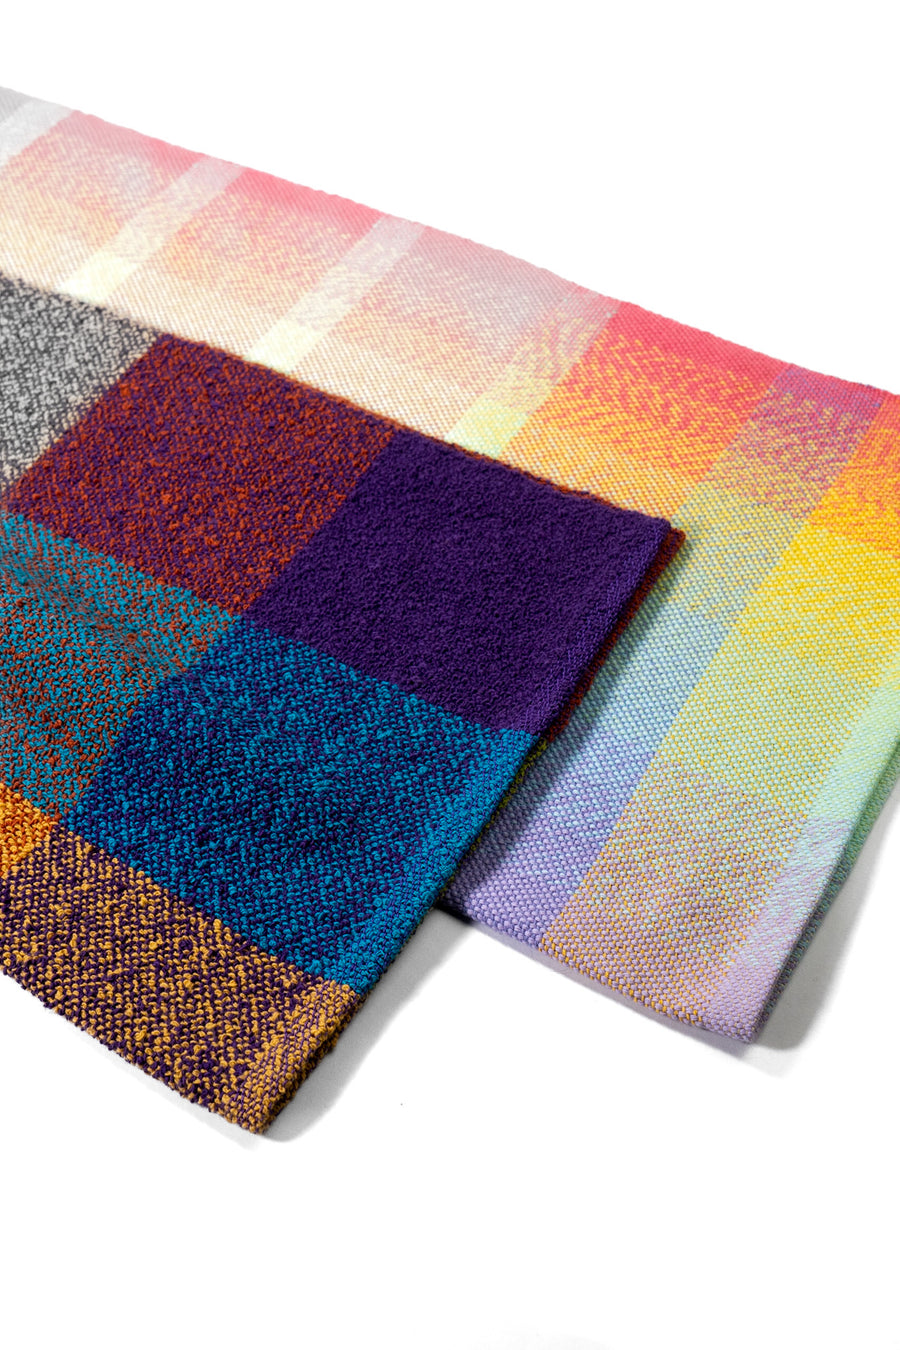 Pastel Gradient Handwoven Towel by Fiber Art Designs